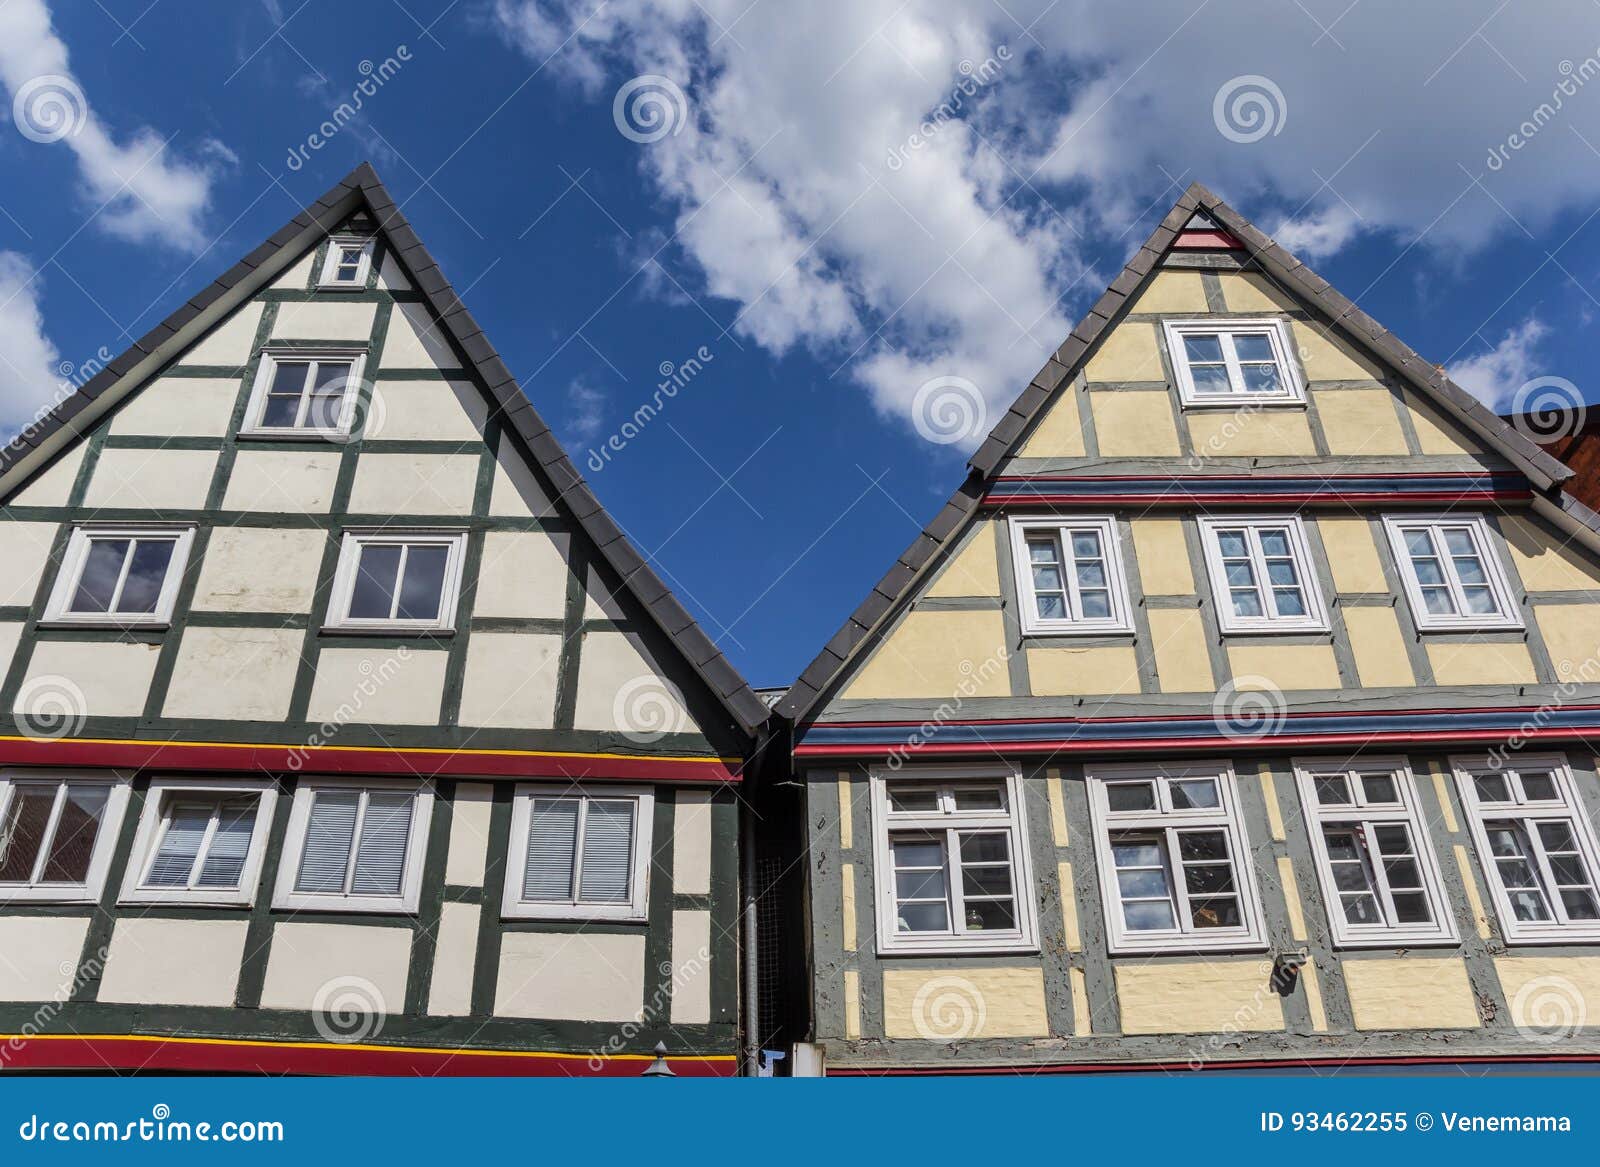 Fachwerkhauser In Der Historischen Mitte Von Celle Stockbild Bild Von Celle Blau 93462255